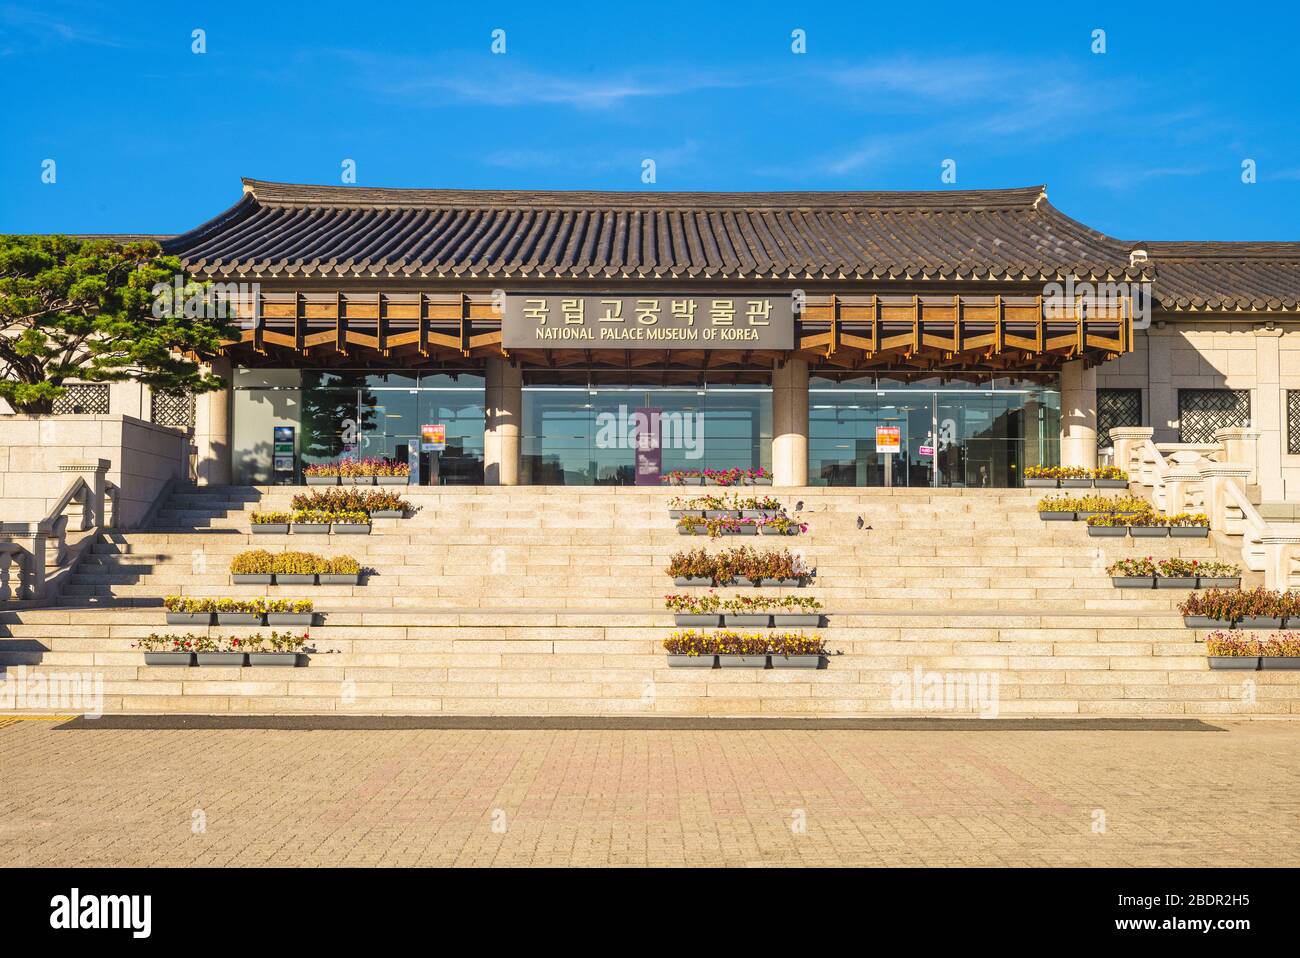 Nationalpalastmuseum von Korea, ursprünglich das Koreanische Kaiserliche Museum. Die Übersetzung des koreanischen Textes lautet "Nationalpalastmuseum von Korea". Stockfoto